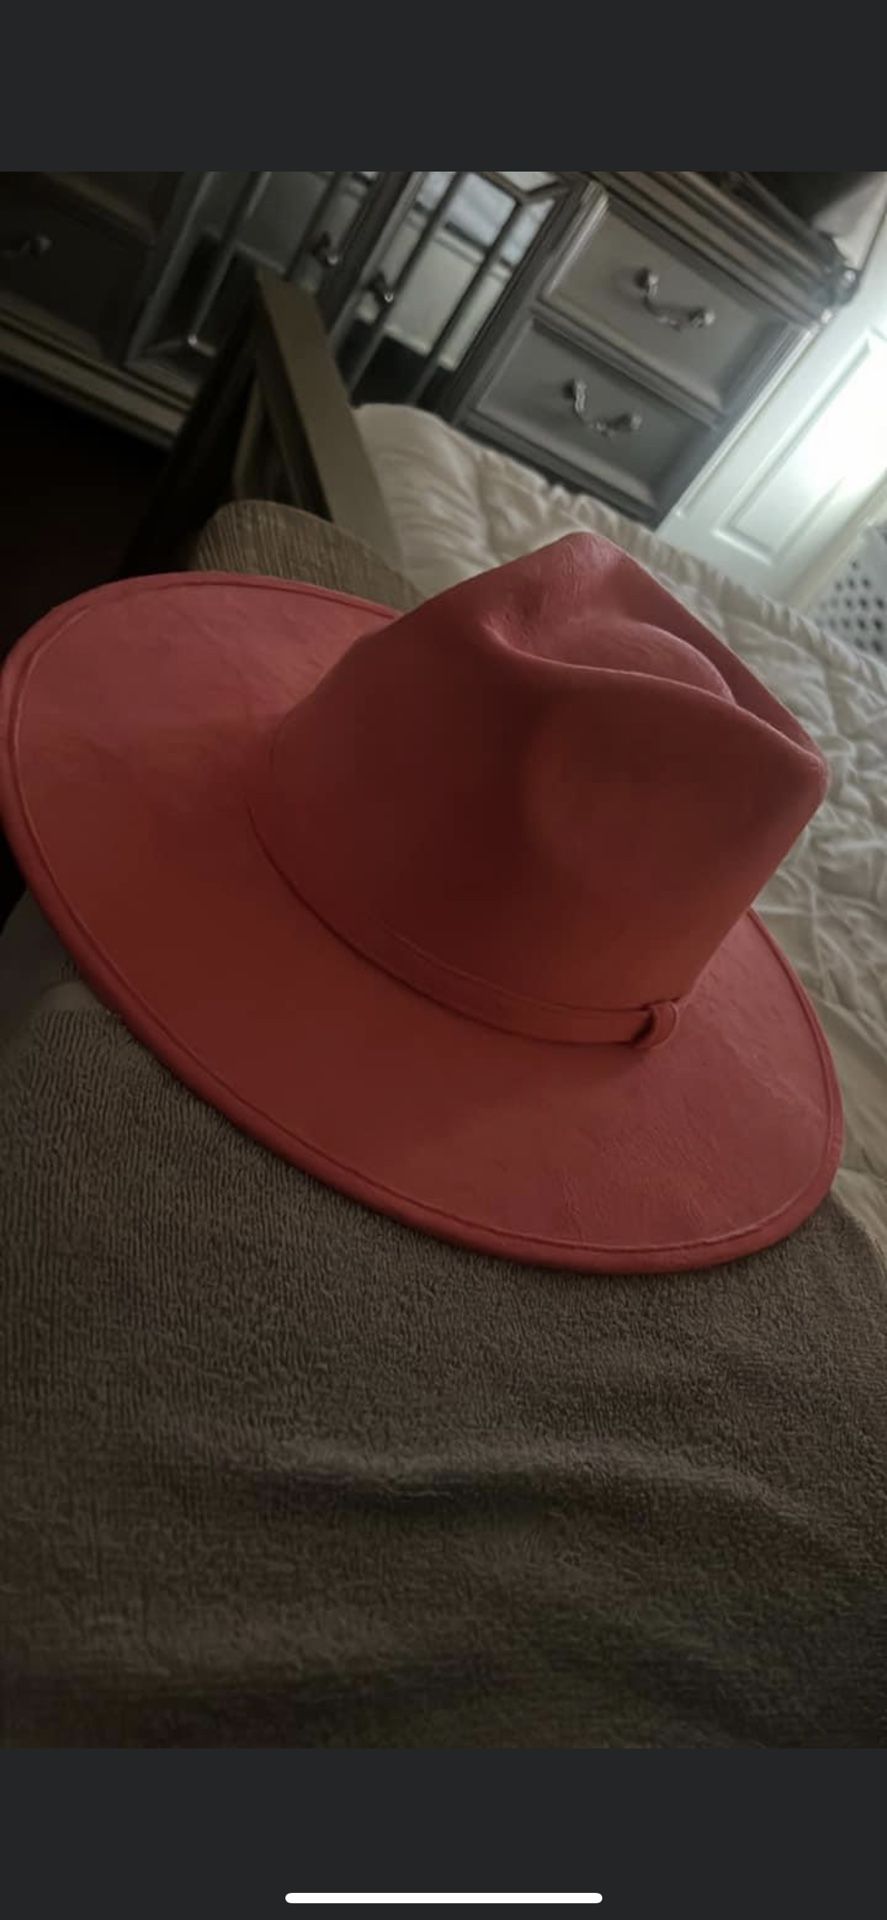 Western Pink Hat